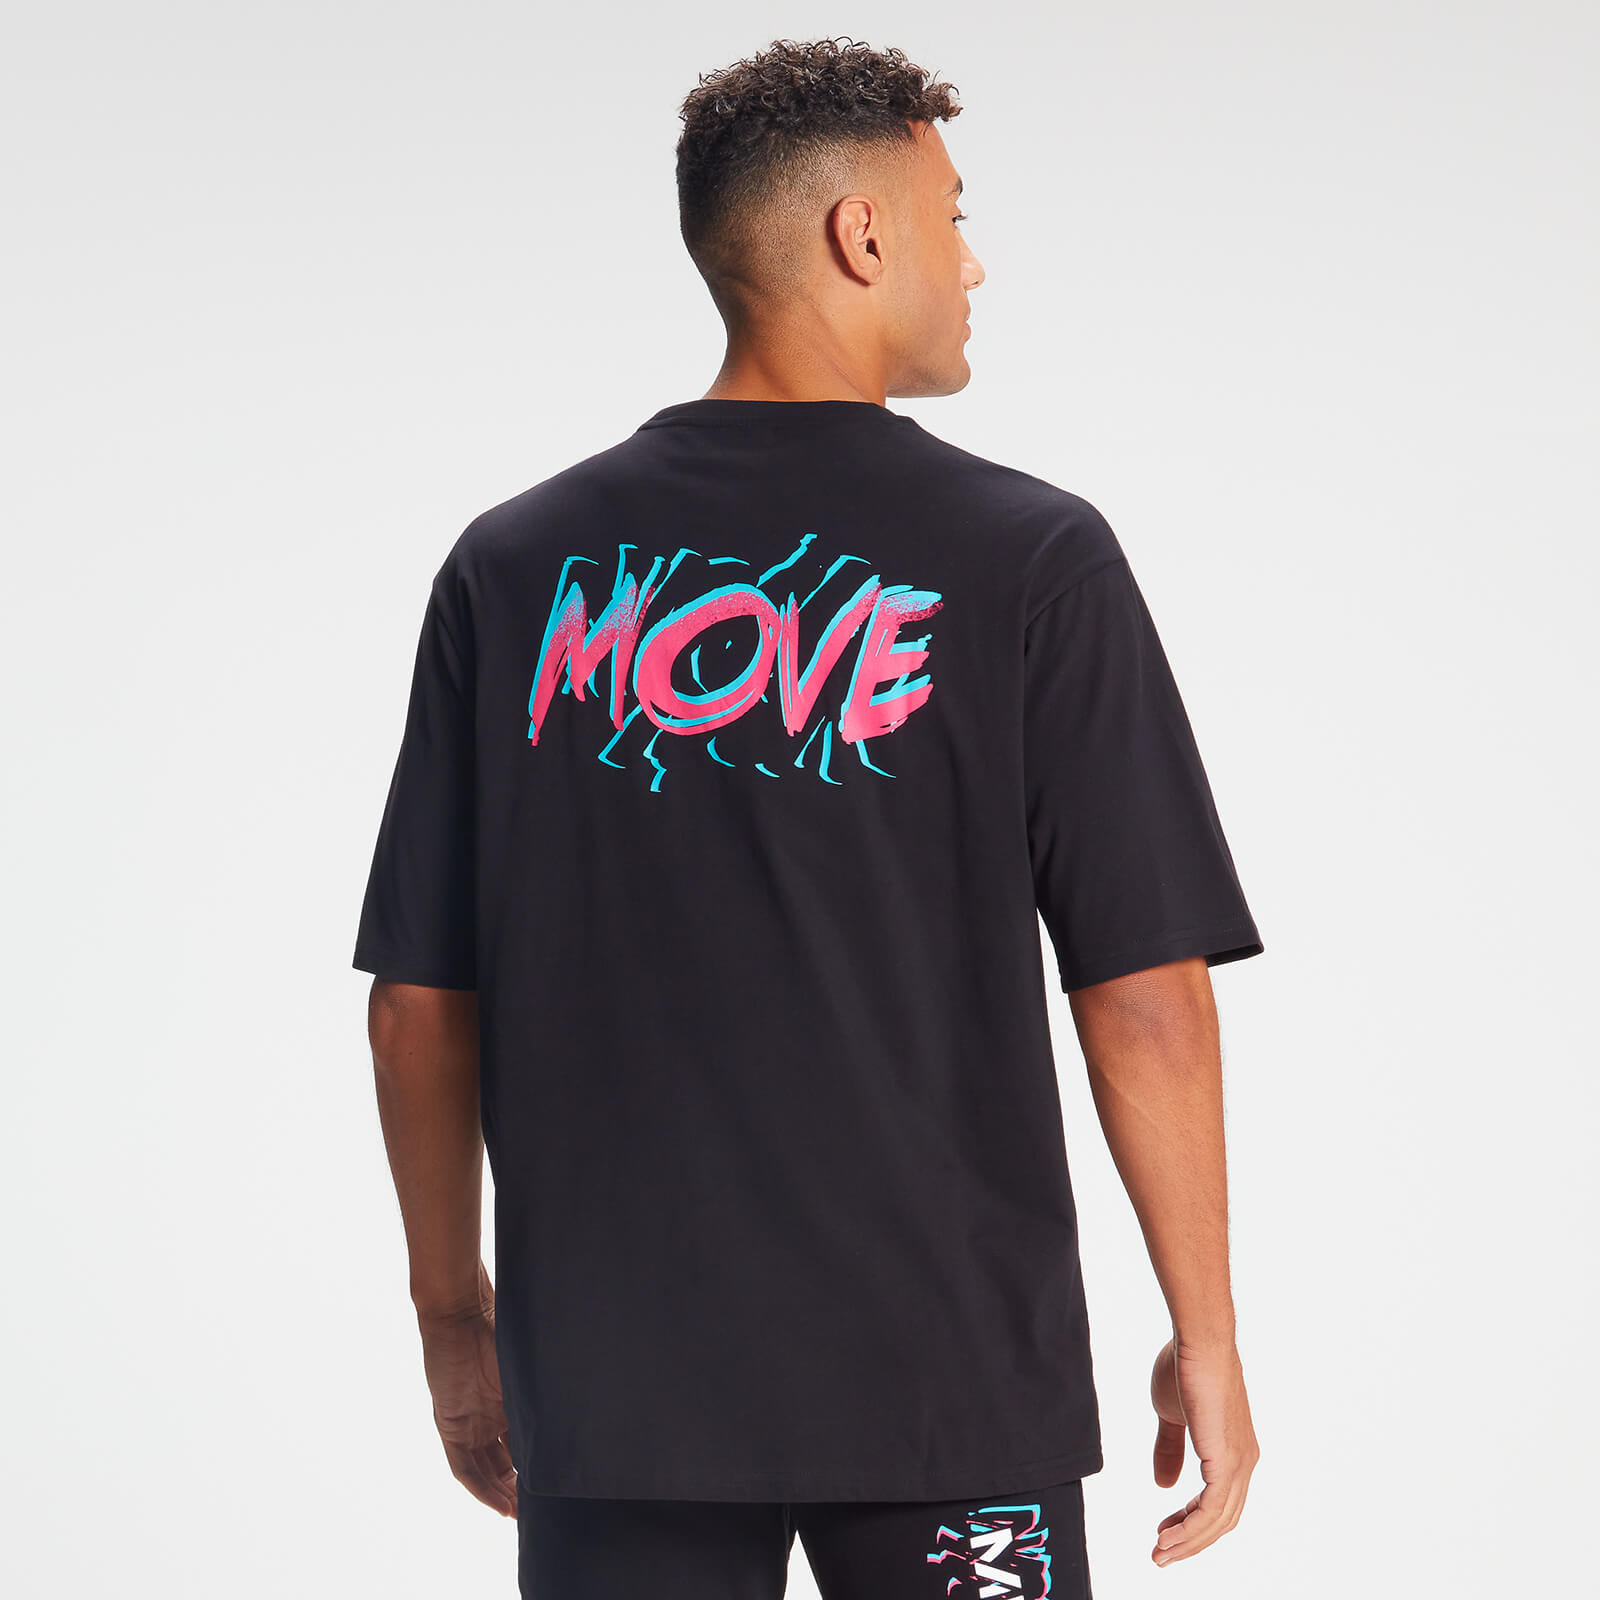 T-shirt Retro Oversized Move da MP para Homem - Preto